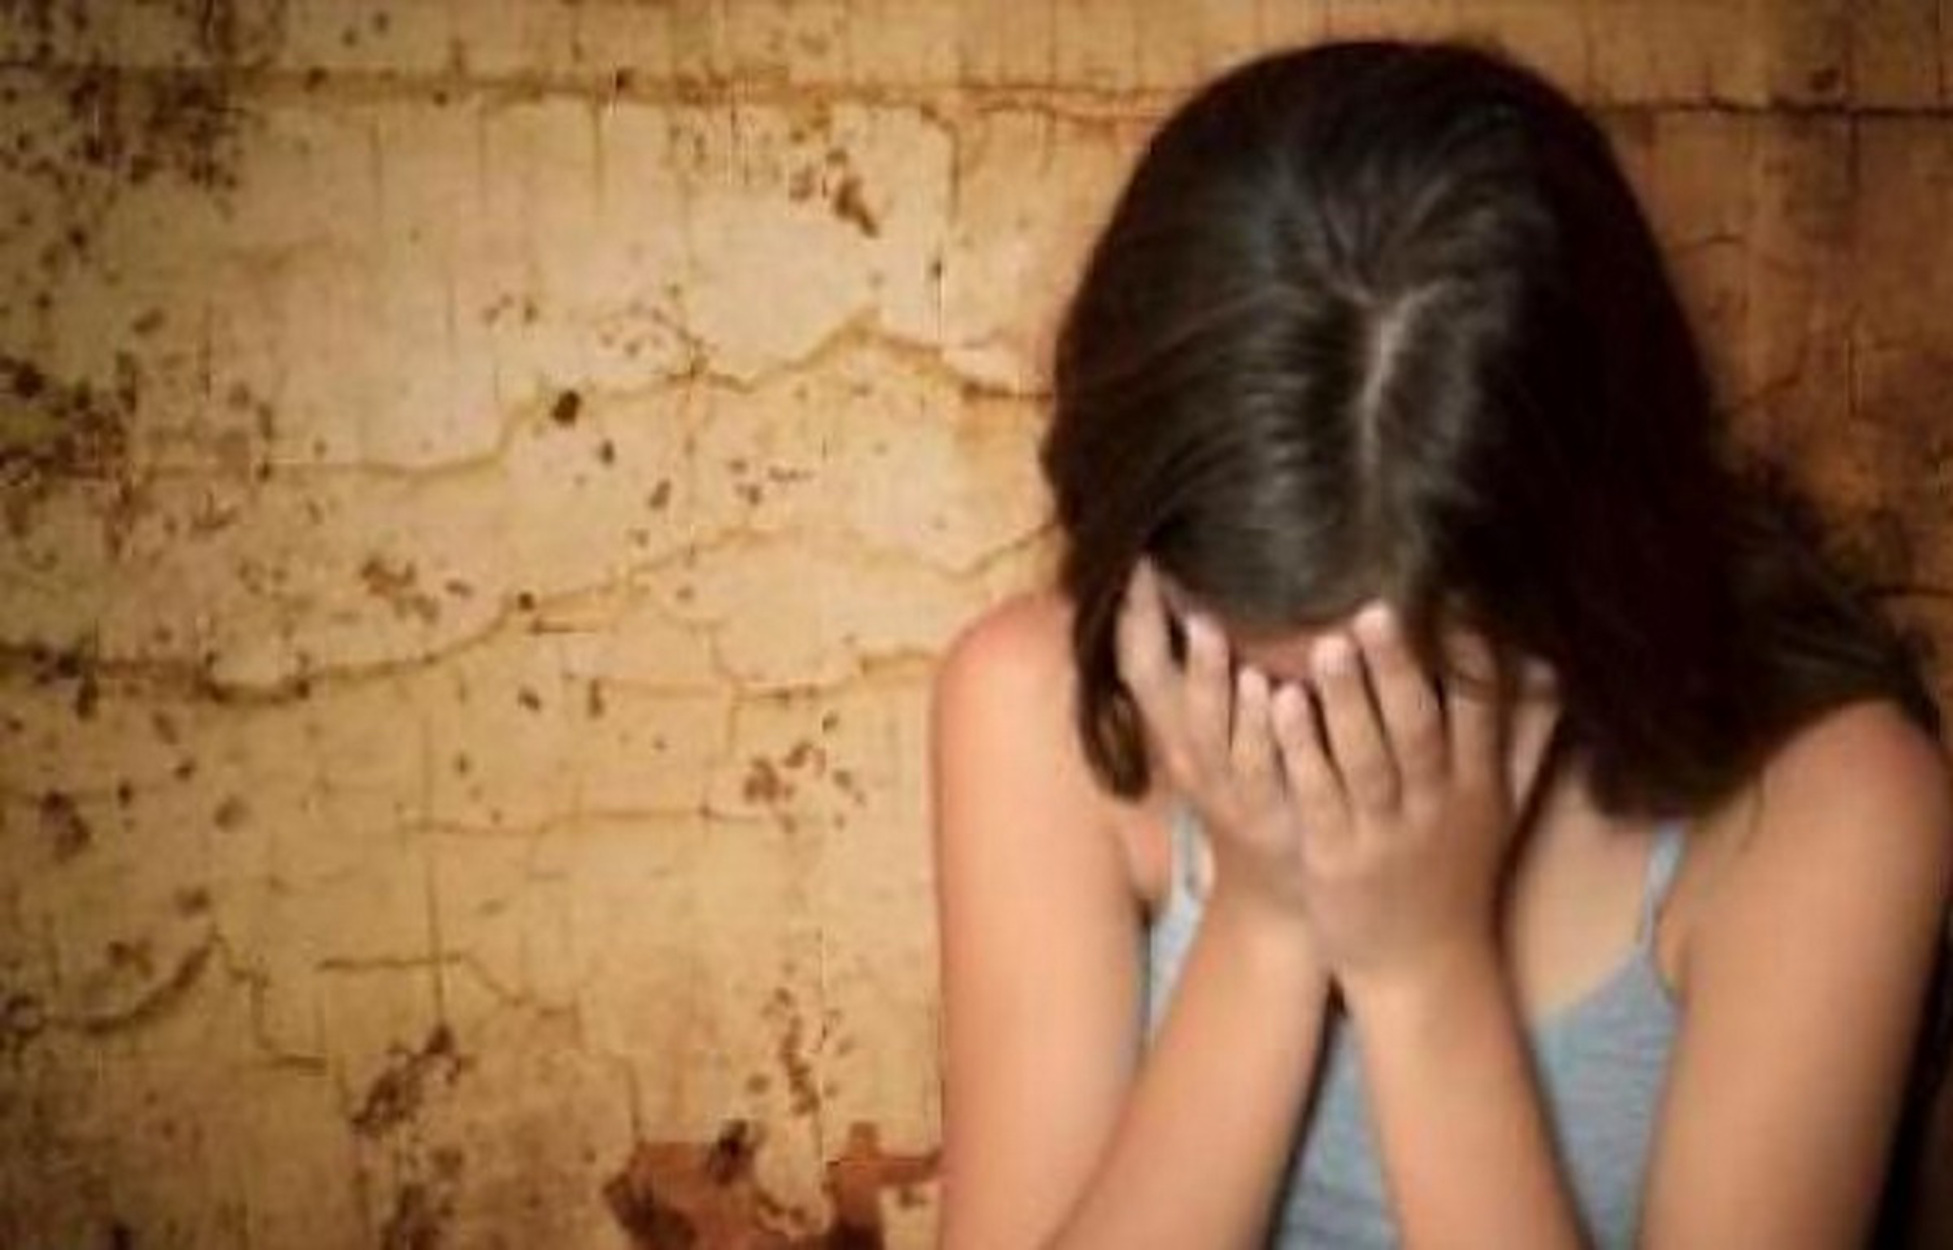 Αναβιώνει η υπόθεση του πατέρα που βίαζε την κόρη του από τα 12 της χρόνια